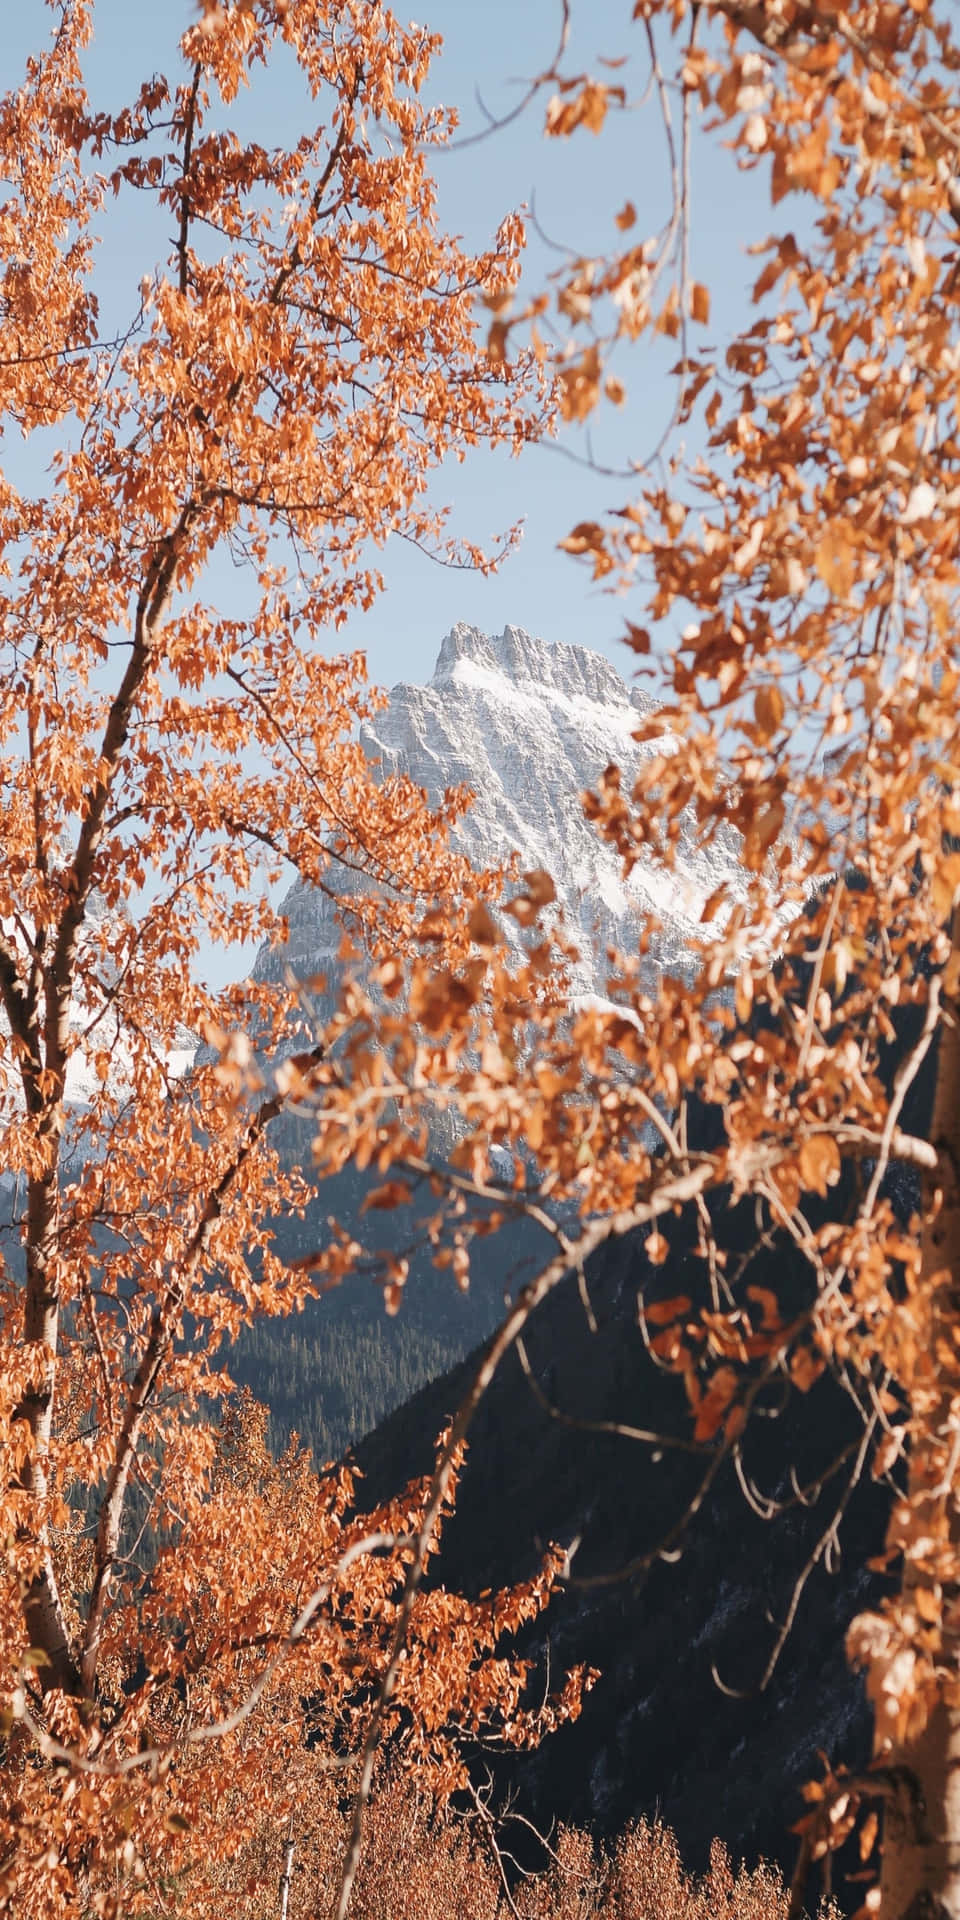 Pixel3 Herbst Hintergrund Mit Orangenen Blättern Und Bergen